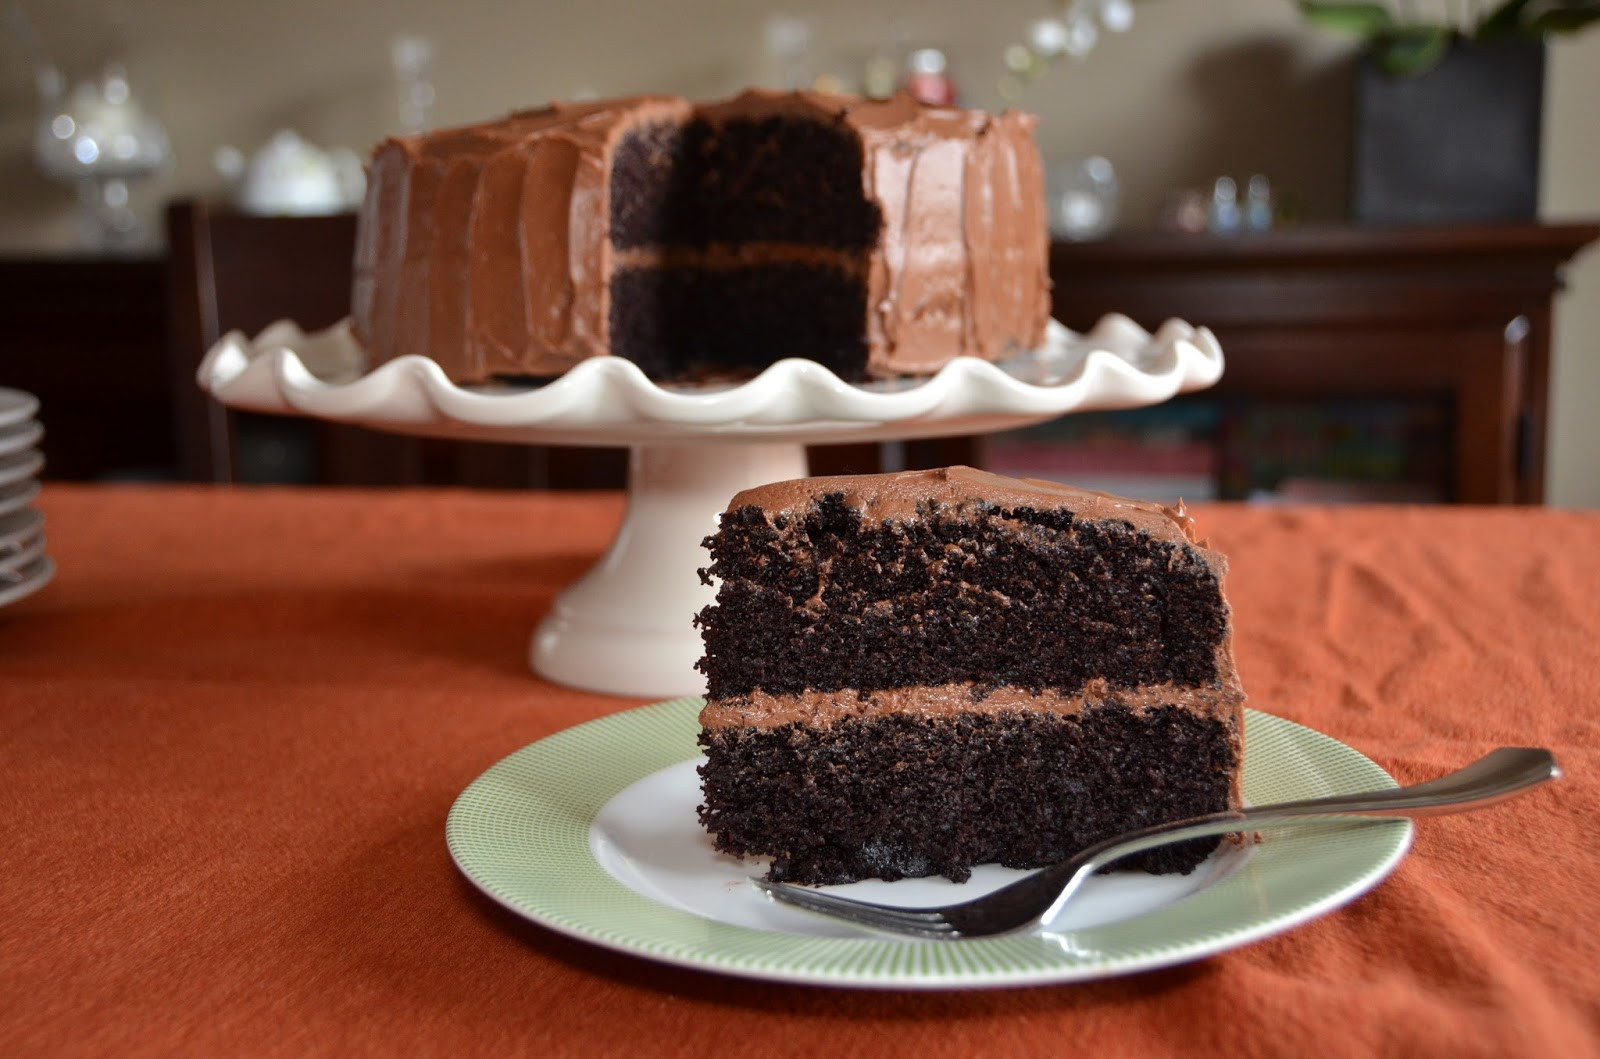 Chocolate Cake Ina Garten
 Playing with Flour Hershey s vs Beatty s chocolate cake